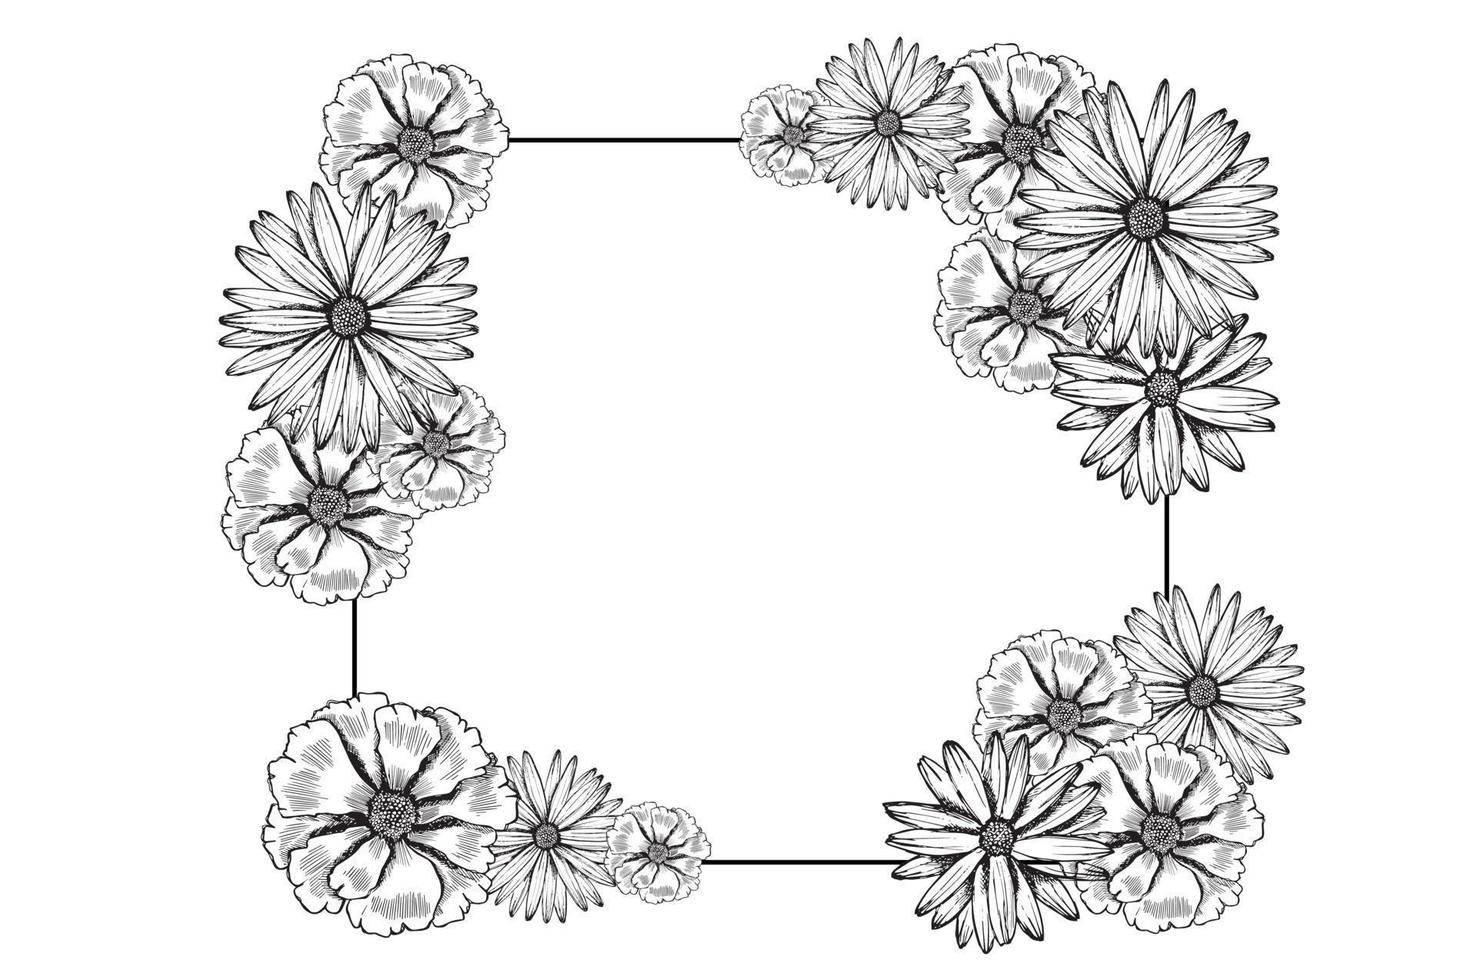 Blumenmuster von Hand gezeichnet. Vektor nahtlose Hintergrund.